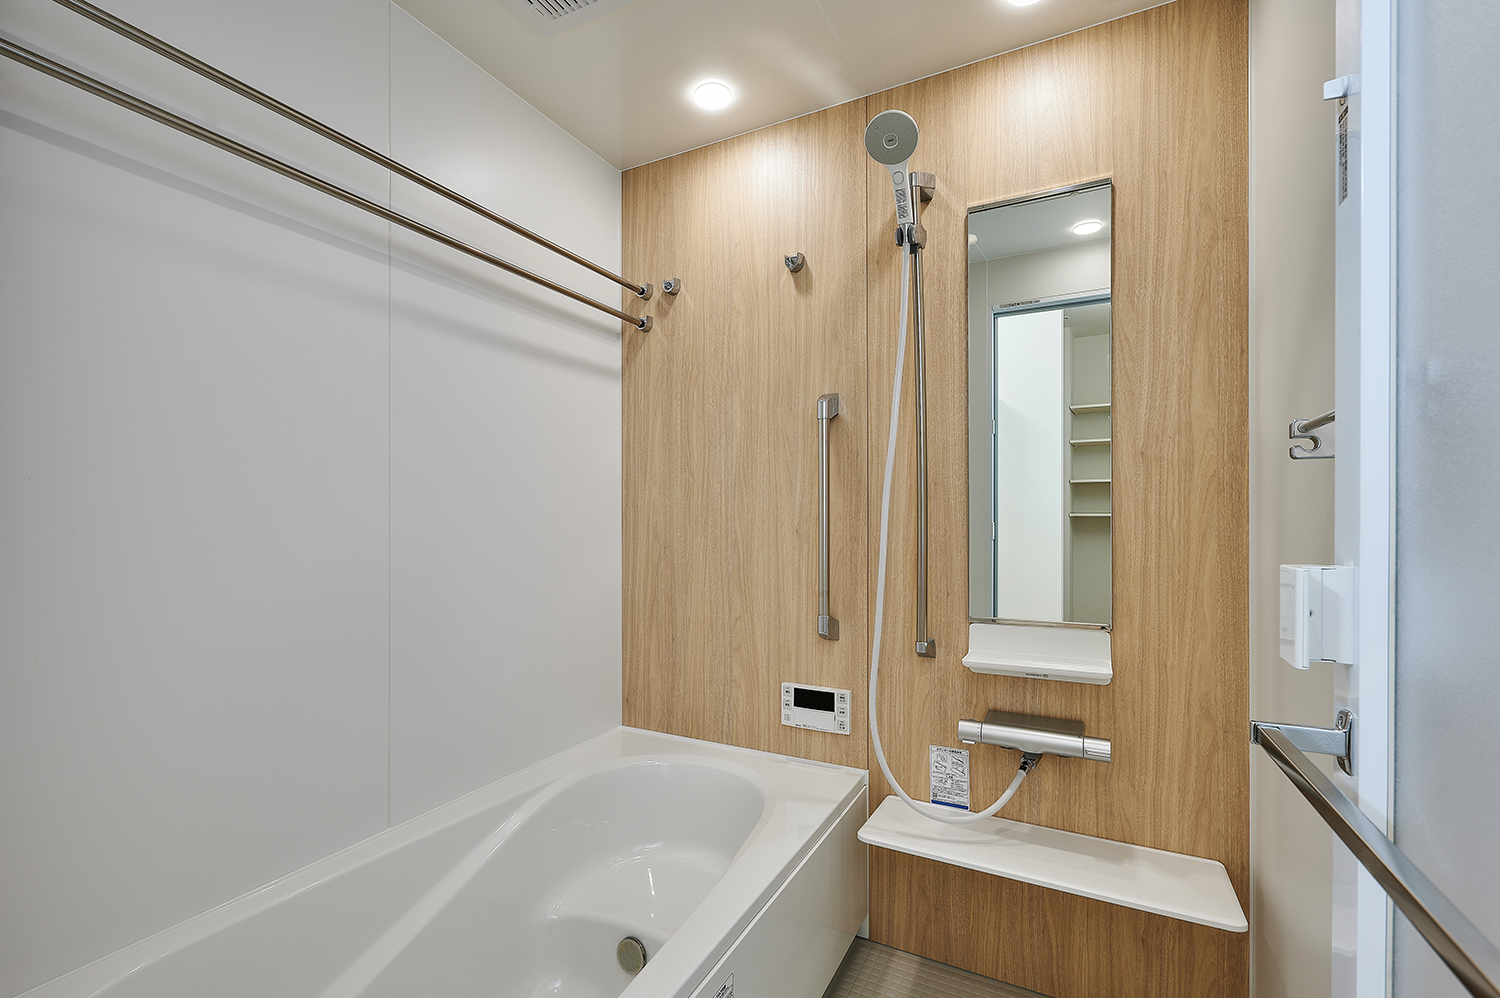 T-1／ワイドサイズでゆったりくつろげるバスタブをセットした浴室。お手入れも簡単で便利な設備を搭載しています。